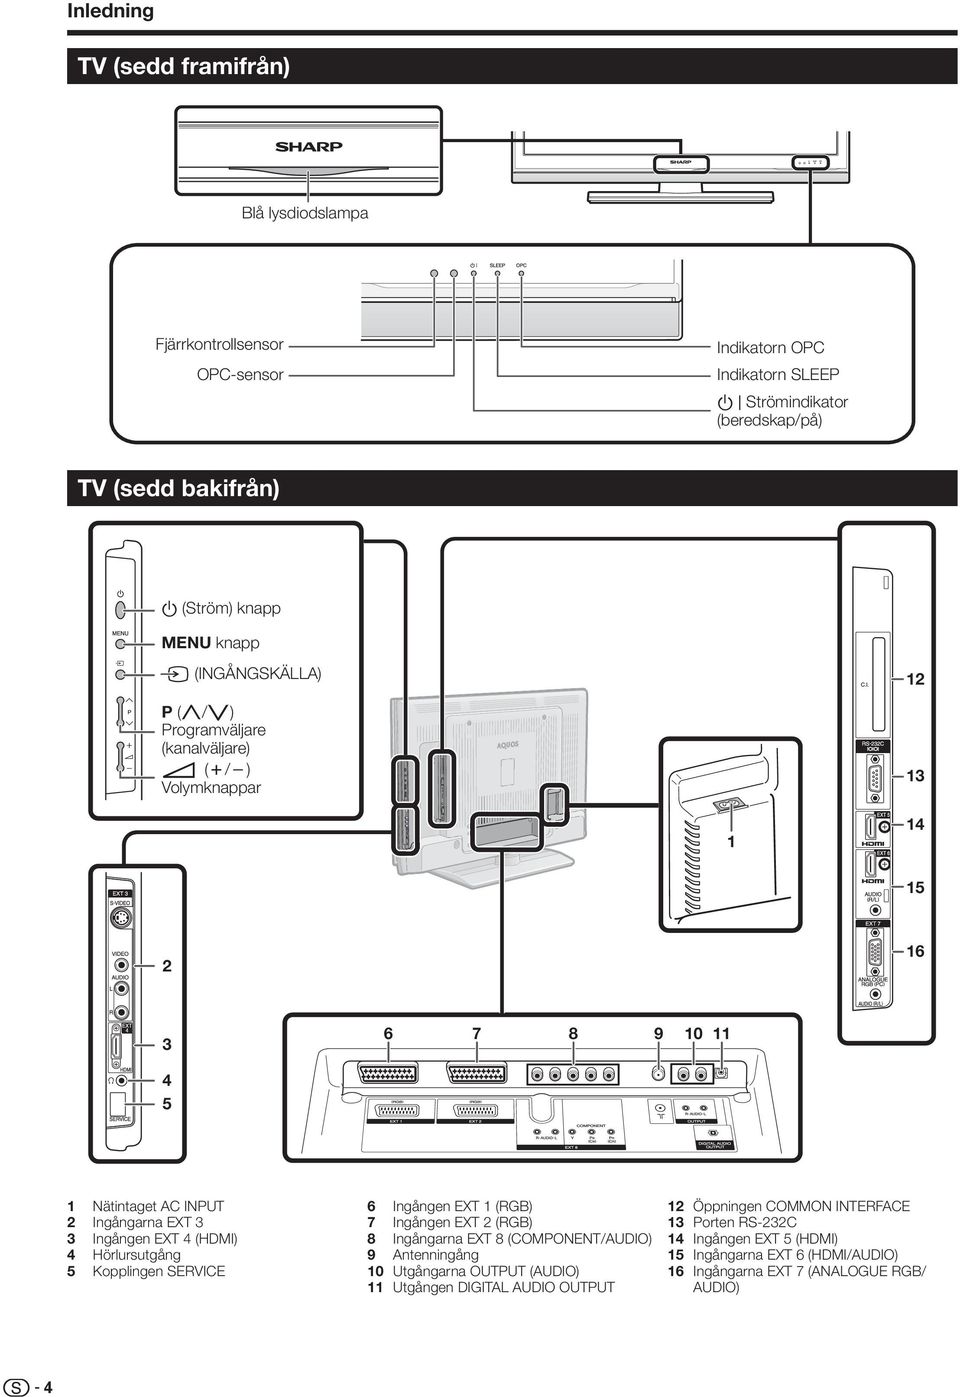 EXT 4 (HDMI) 4 Hörlursutgång 5 Kopplingen SERVICE 6 Ingången EXT (RGB) 7 Ingången EXT (RGB) 8 Ingångarna EXT 8 (COMPONENT/AUDIO) 9 Antenningång 0 Utgångarna OUTPUT